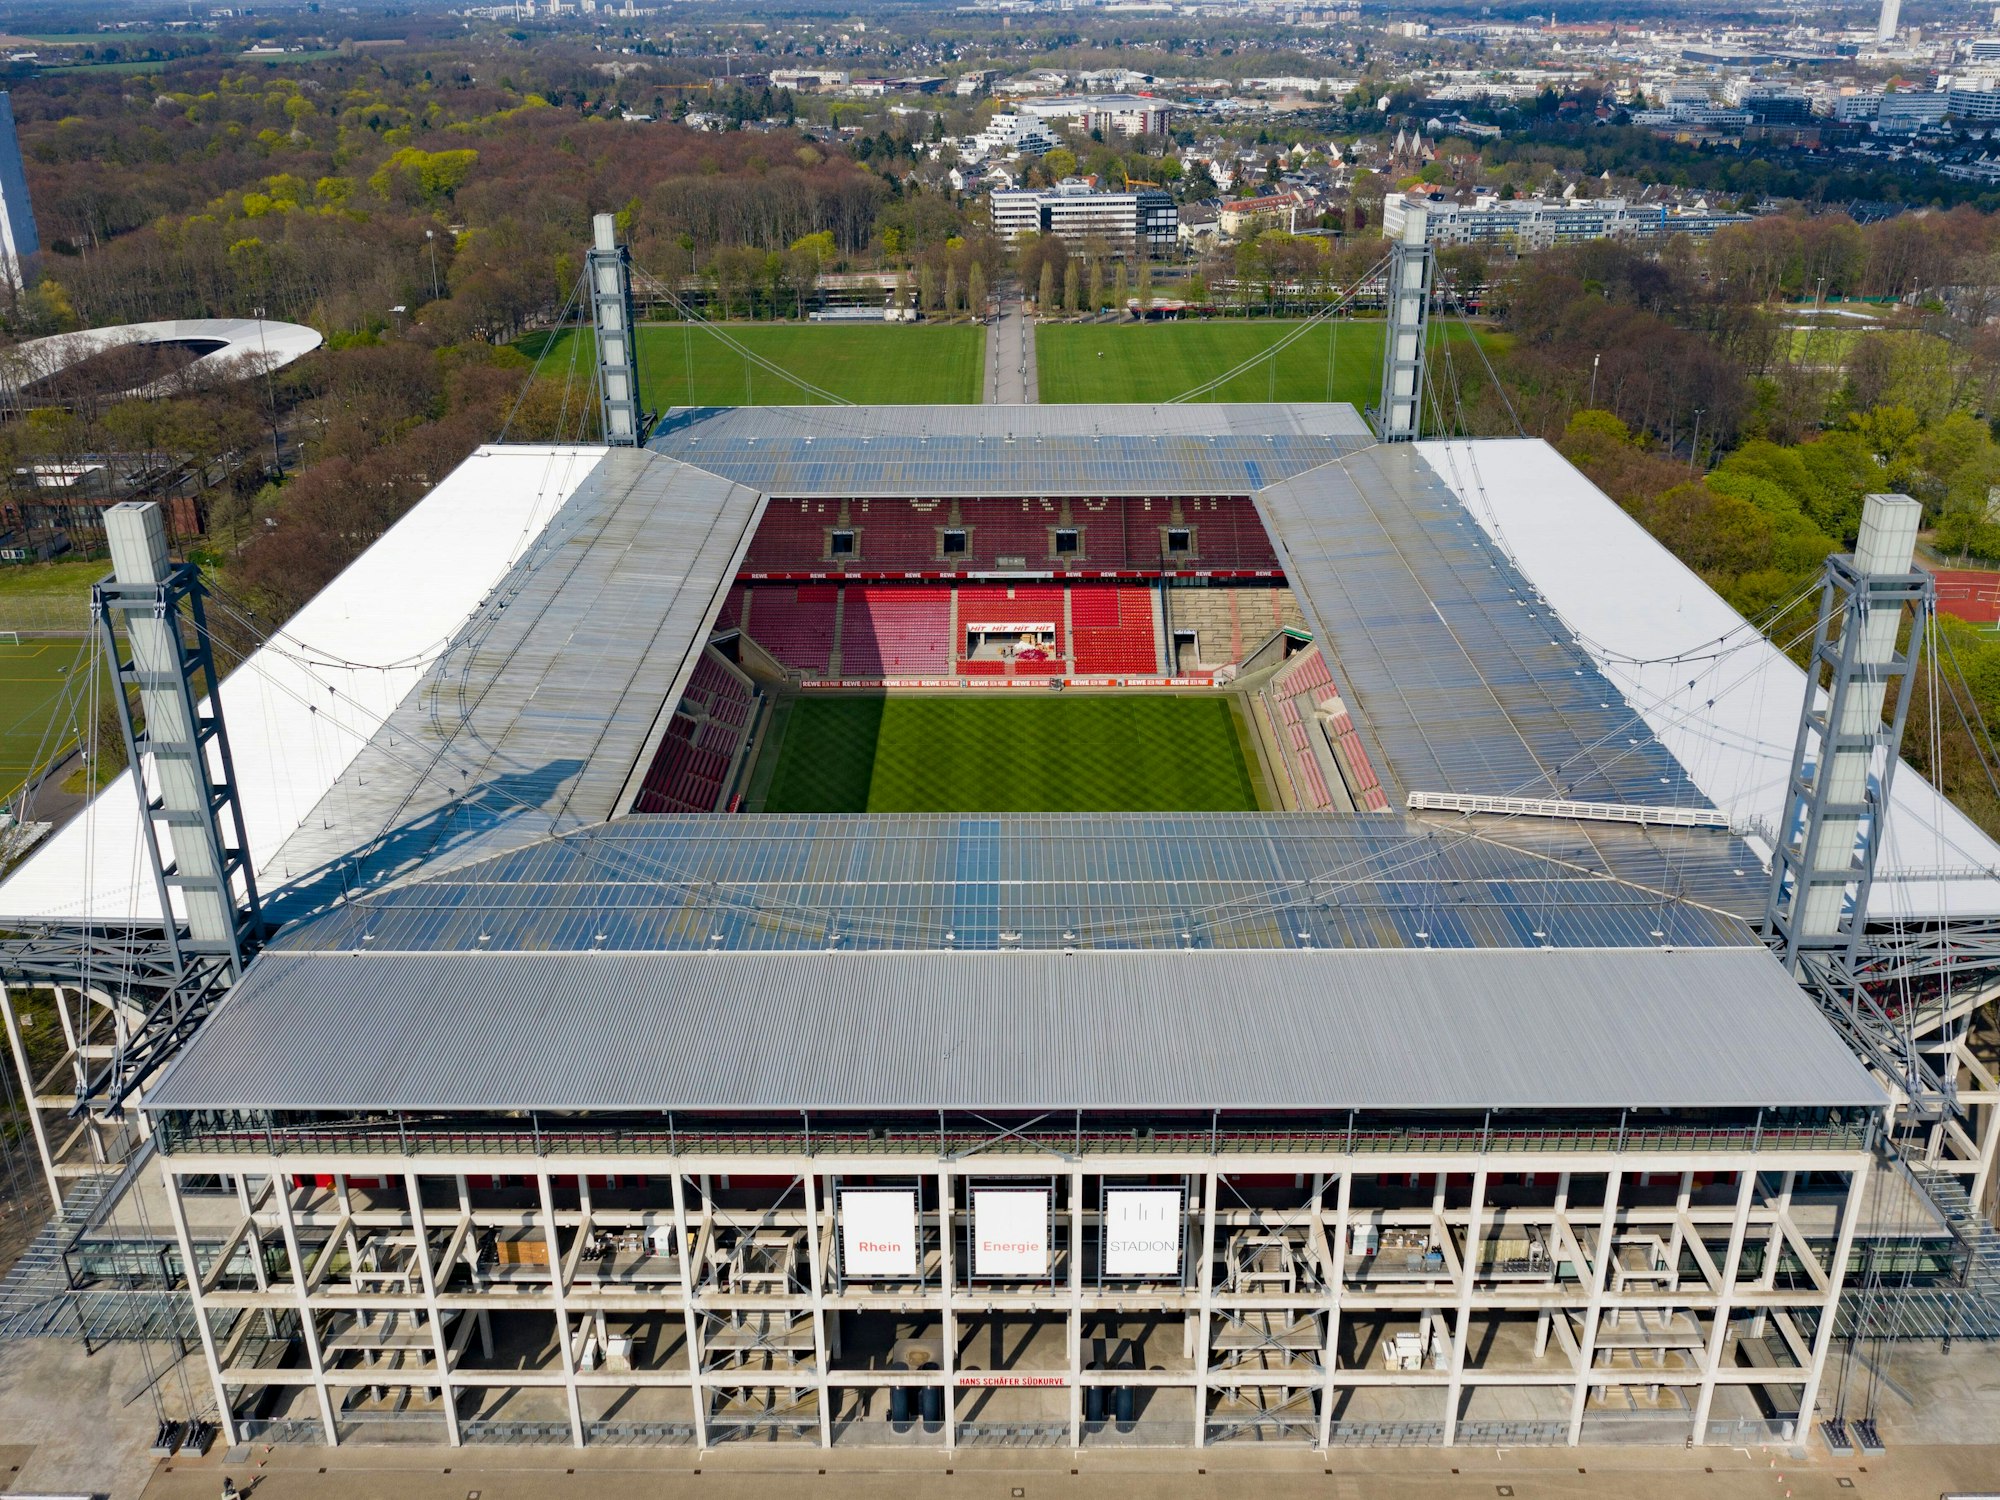 Das Kölner Stadion, Heimspielstätte des 1. FC Köln, von oben.